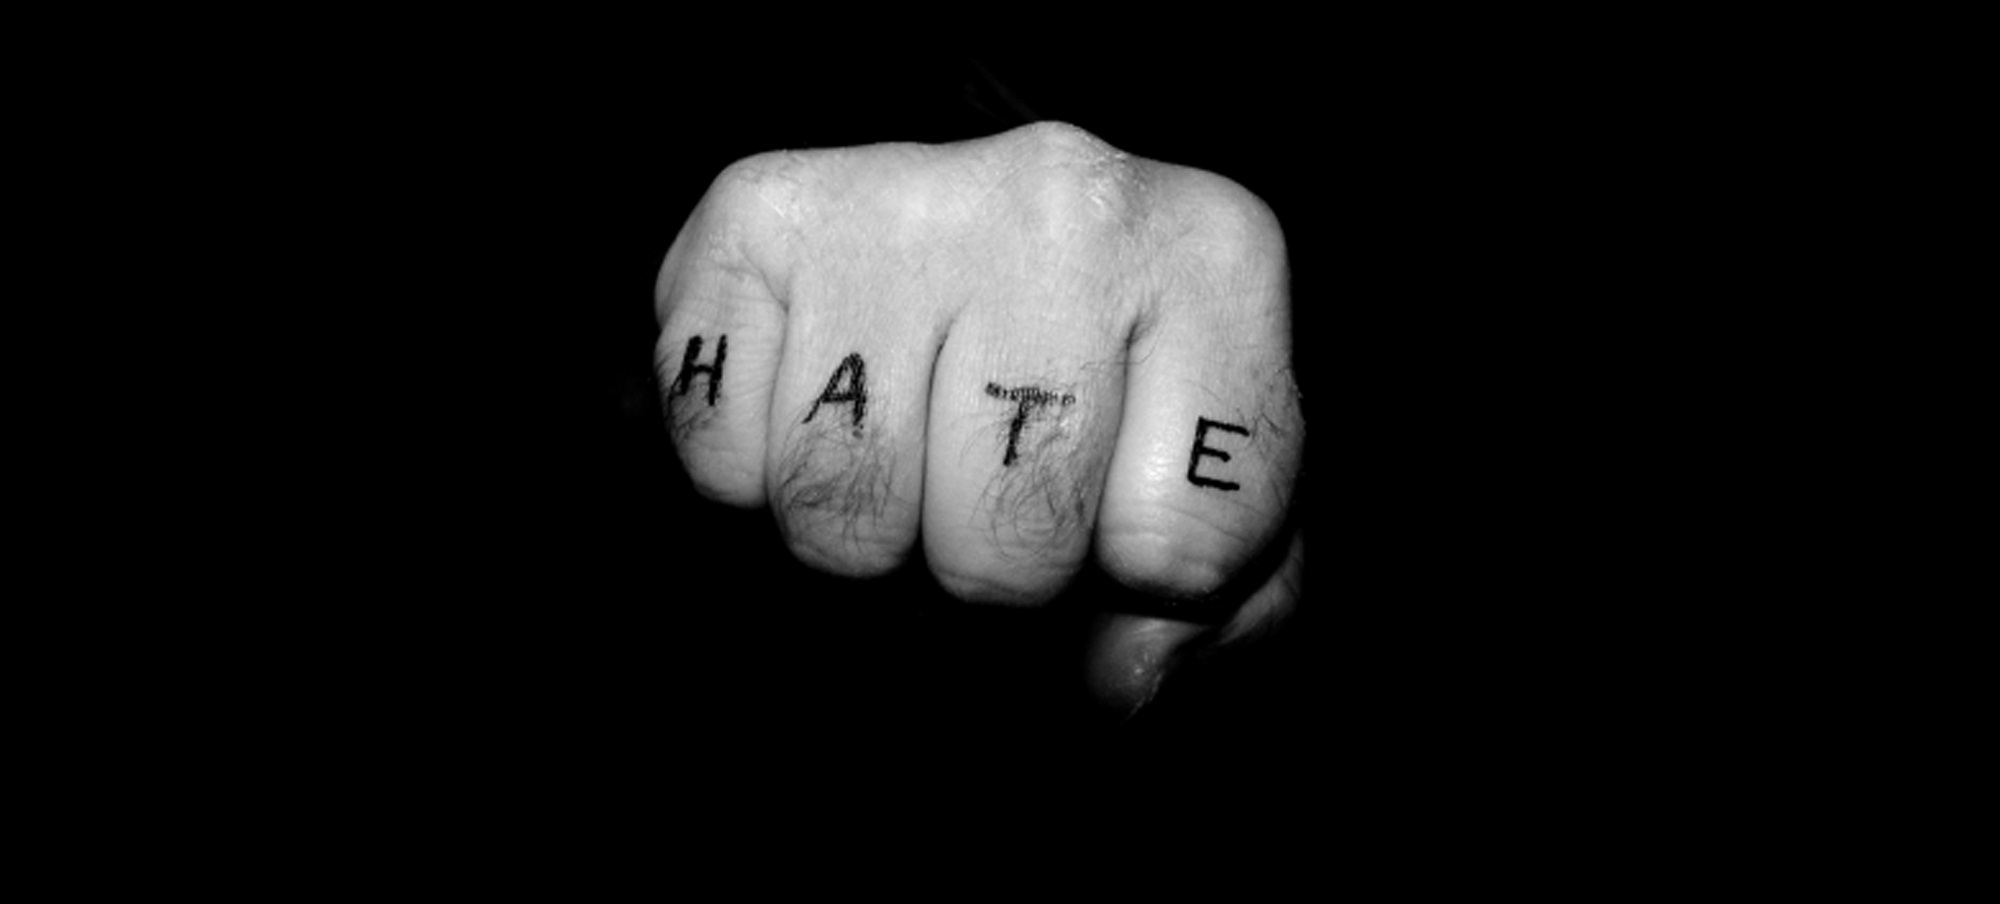 Contenidos clickbait y comentarios troll: El fractal del odio